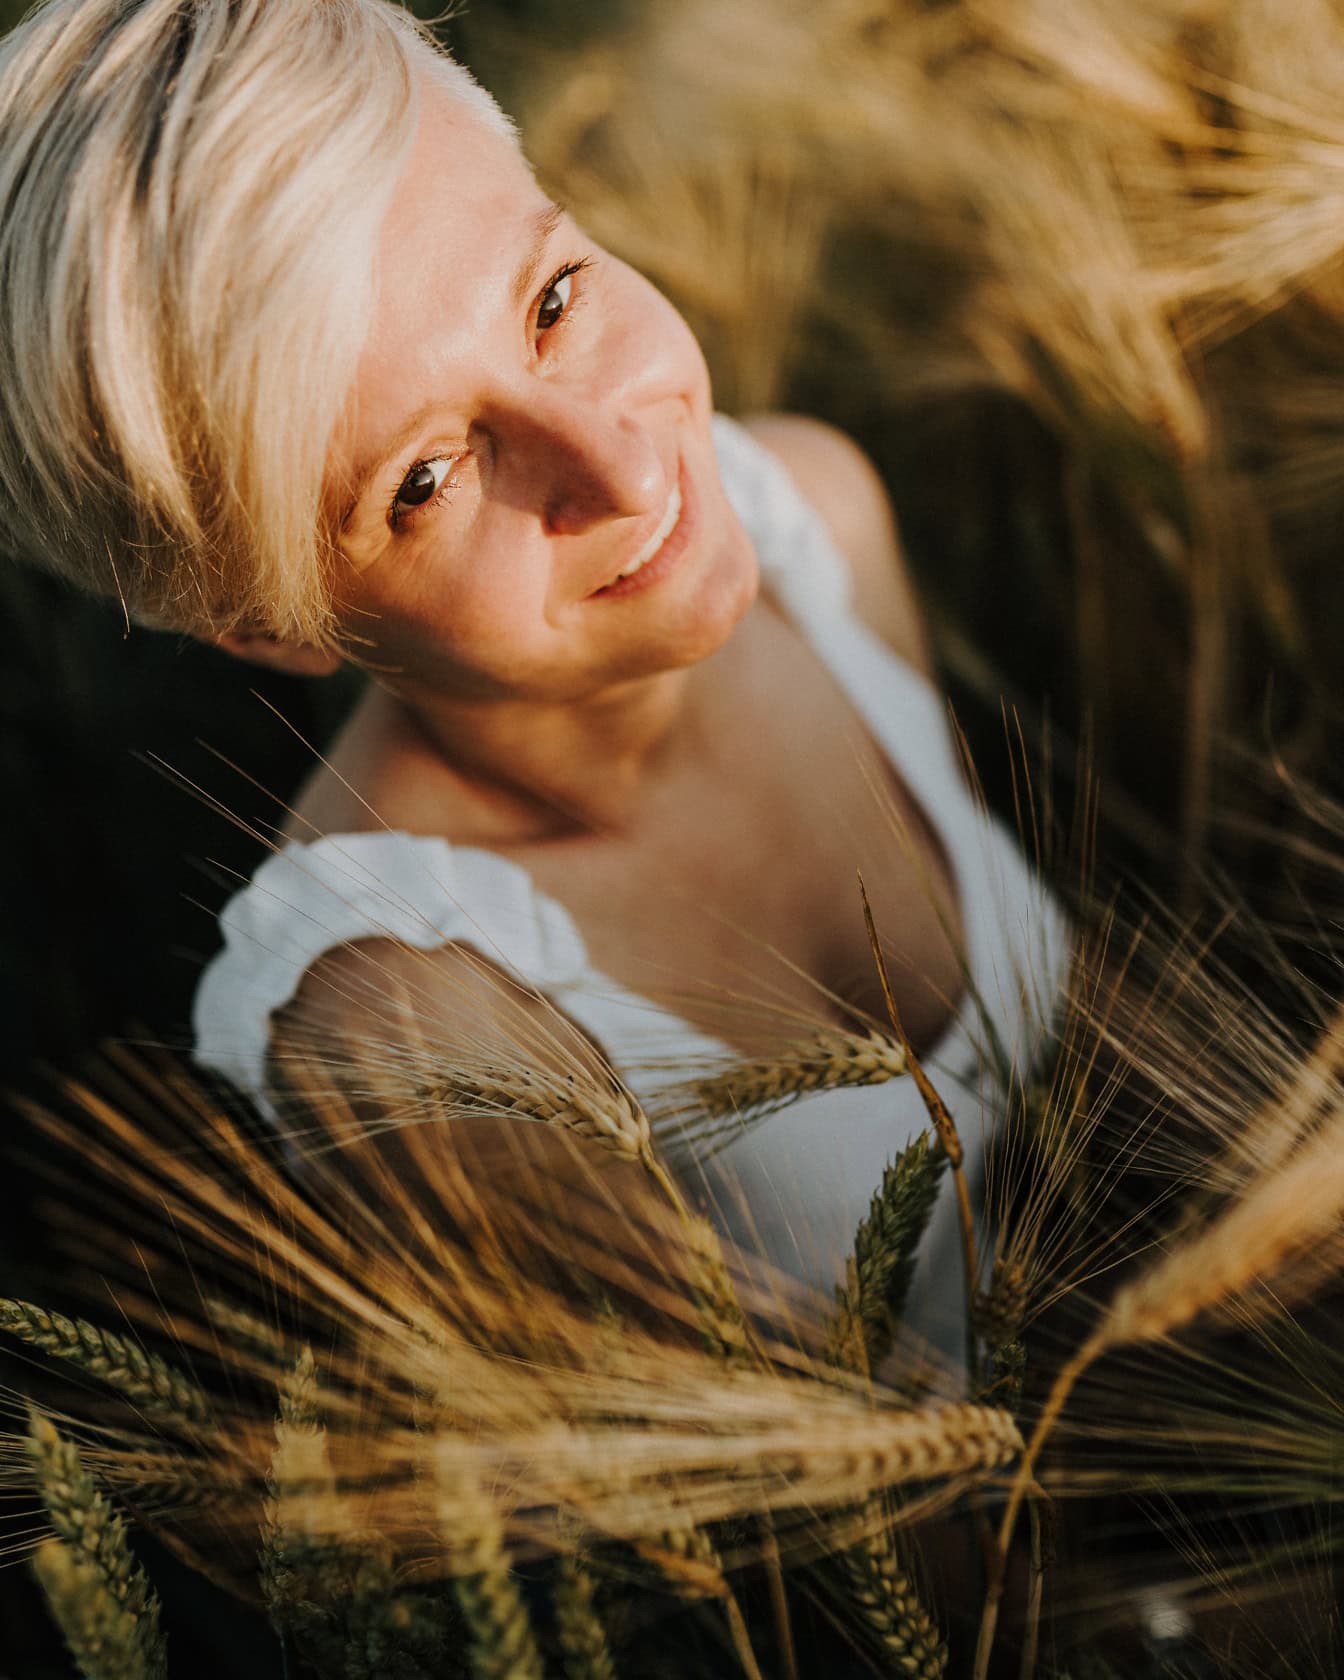 Chân dung cận cảnh một cô gái tóc vàng đang mỉm cười với mái tóc ngắn tạo dáng trên cánh đồng lúa mì